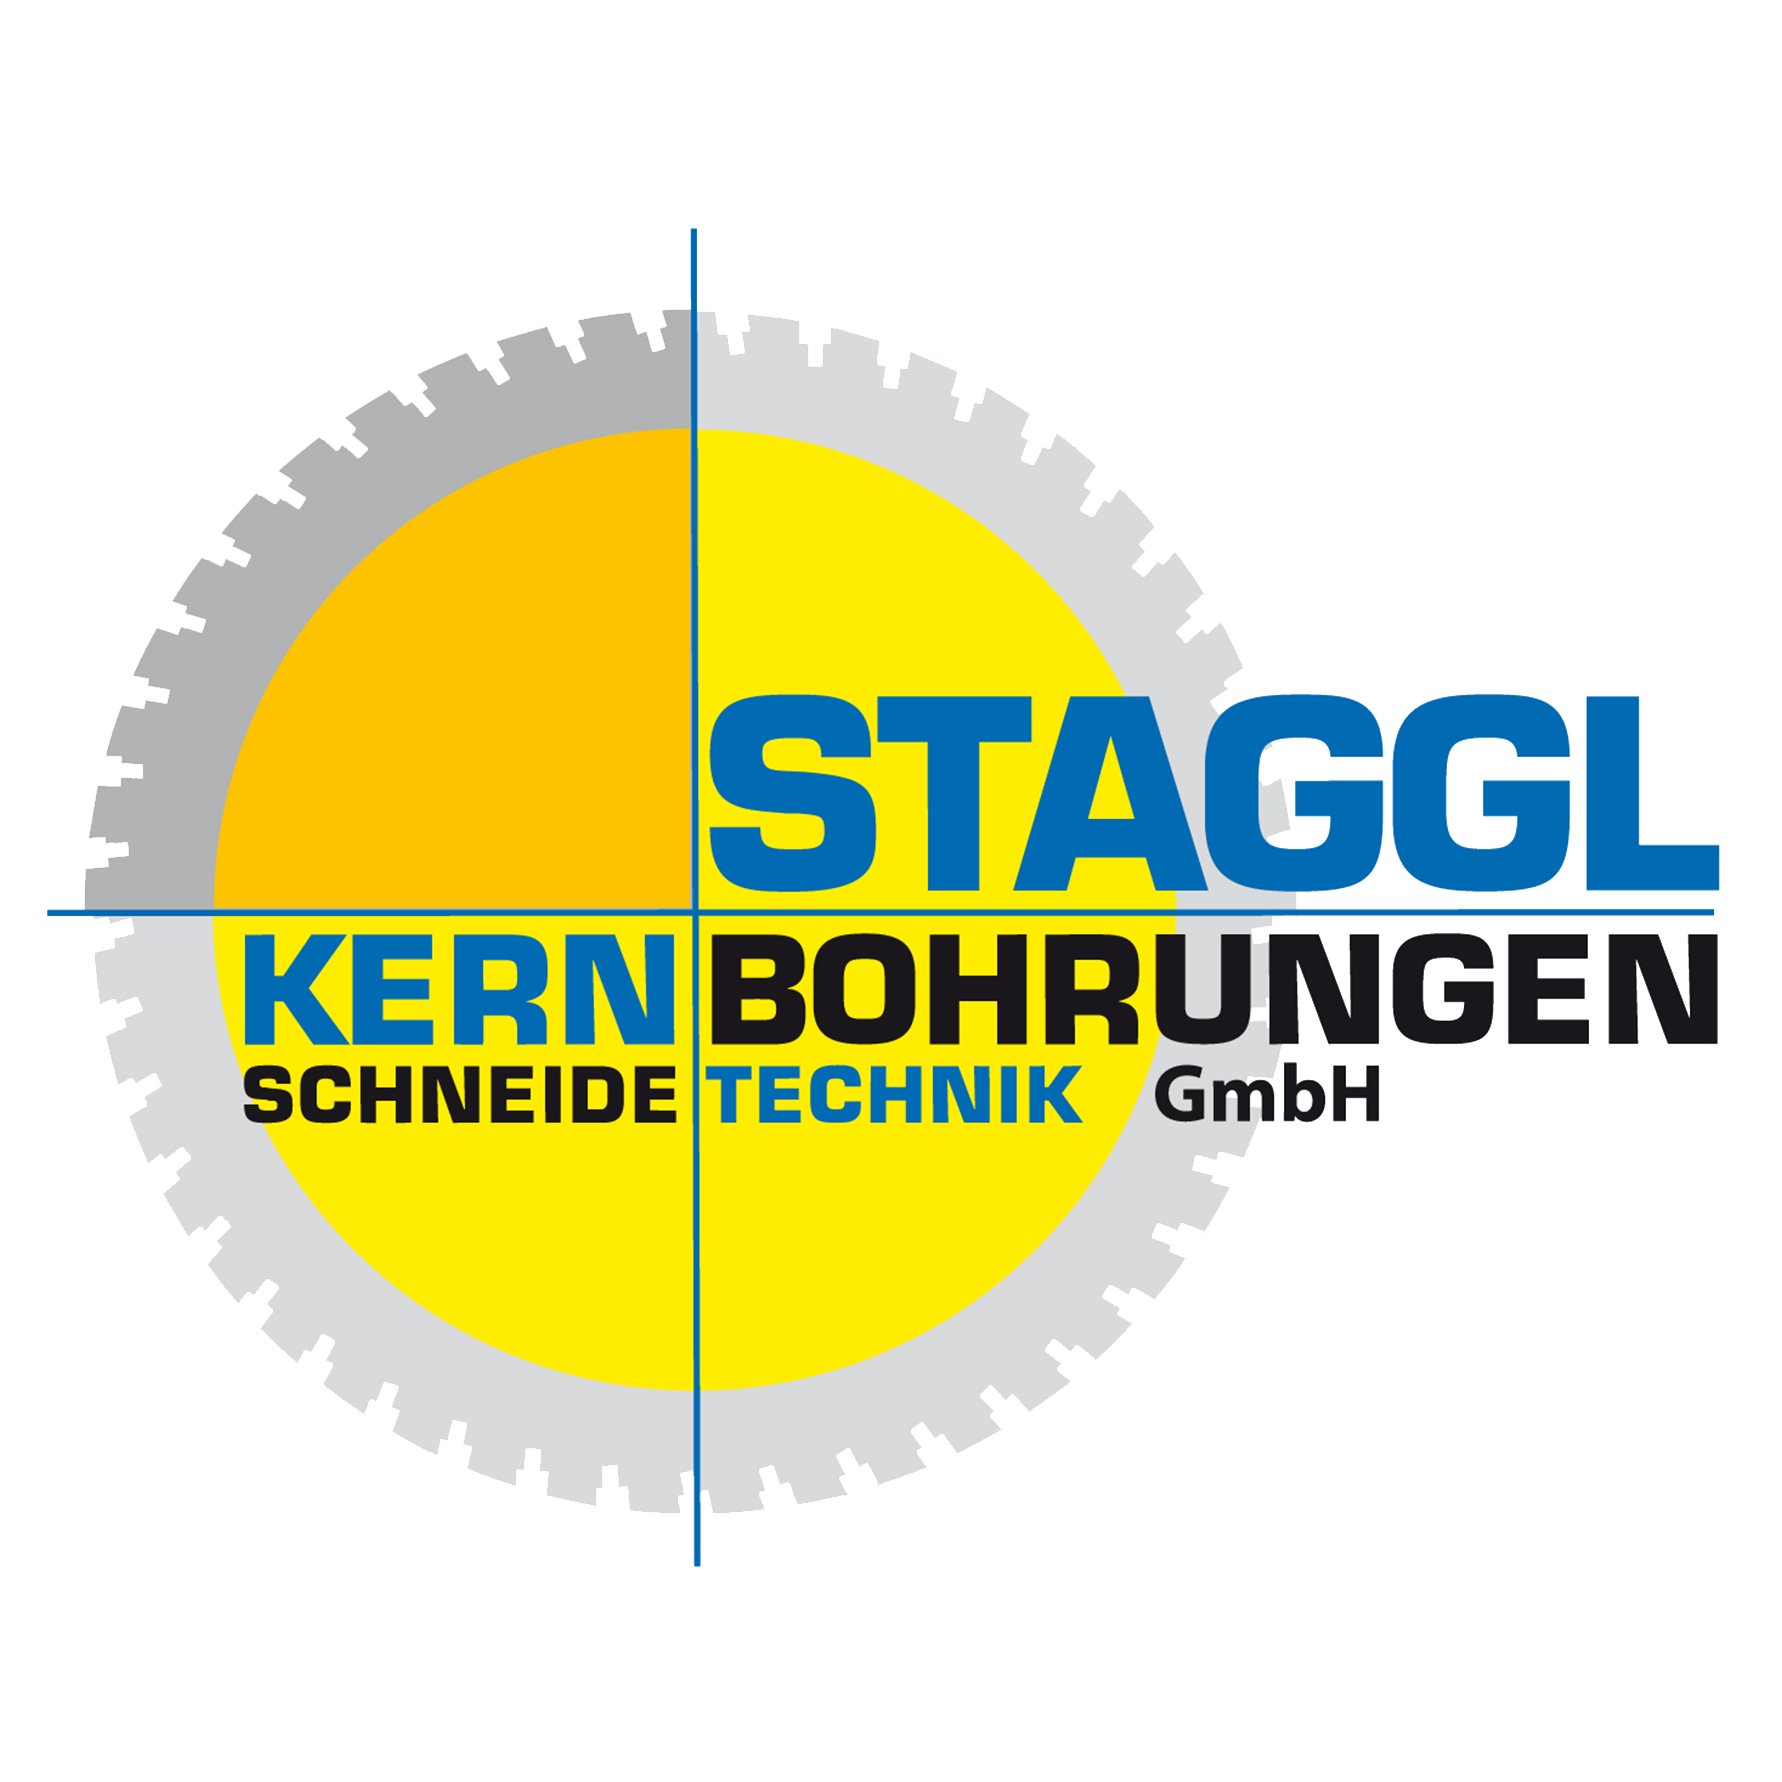 Staggl Kernbohrungen u Schneidetechnik GmbH Logo